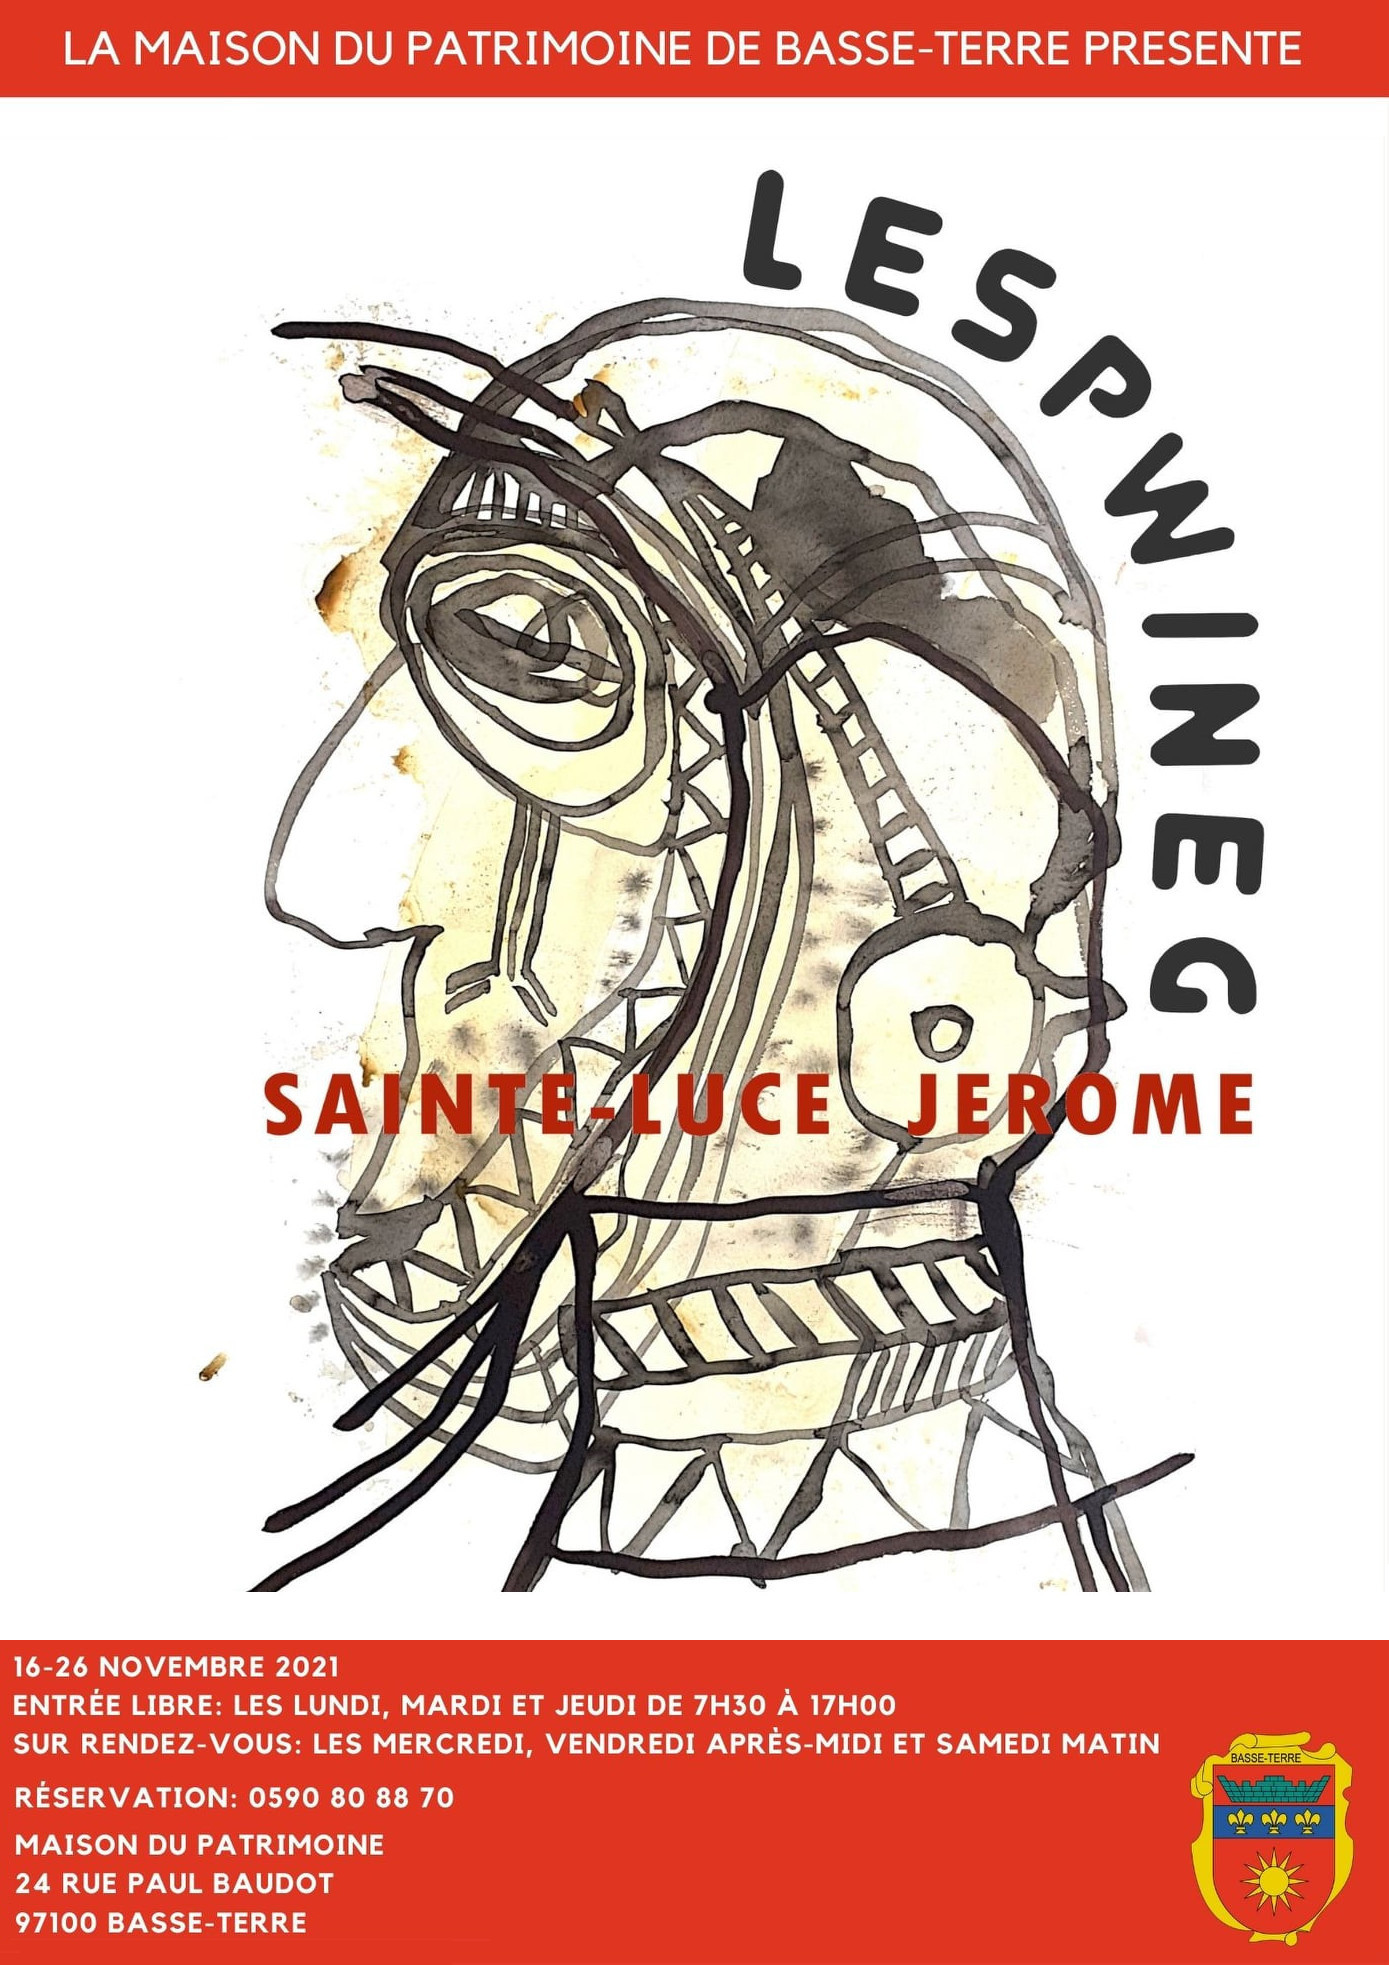 Exposition LESPWINEG de Jérôme Sainte-Luce à la Maison du Patrimoine de Basse-Terre